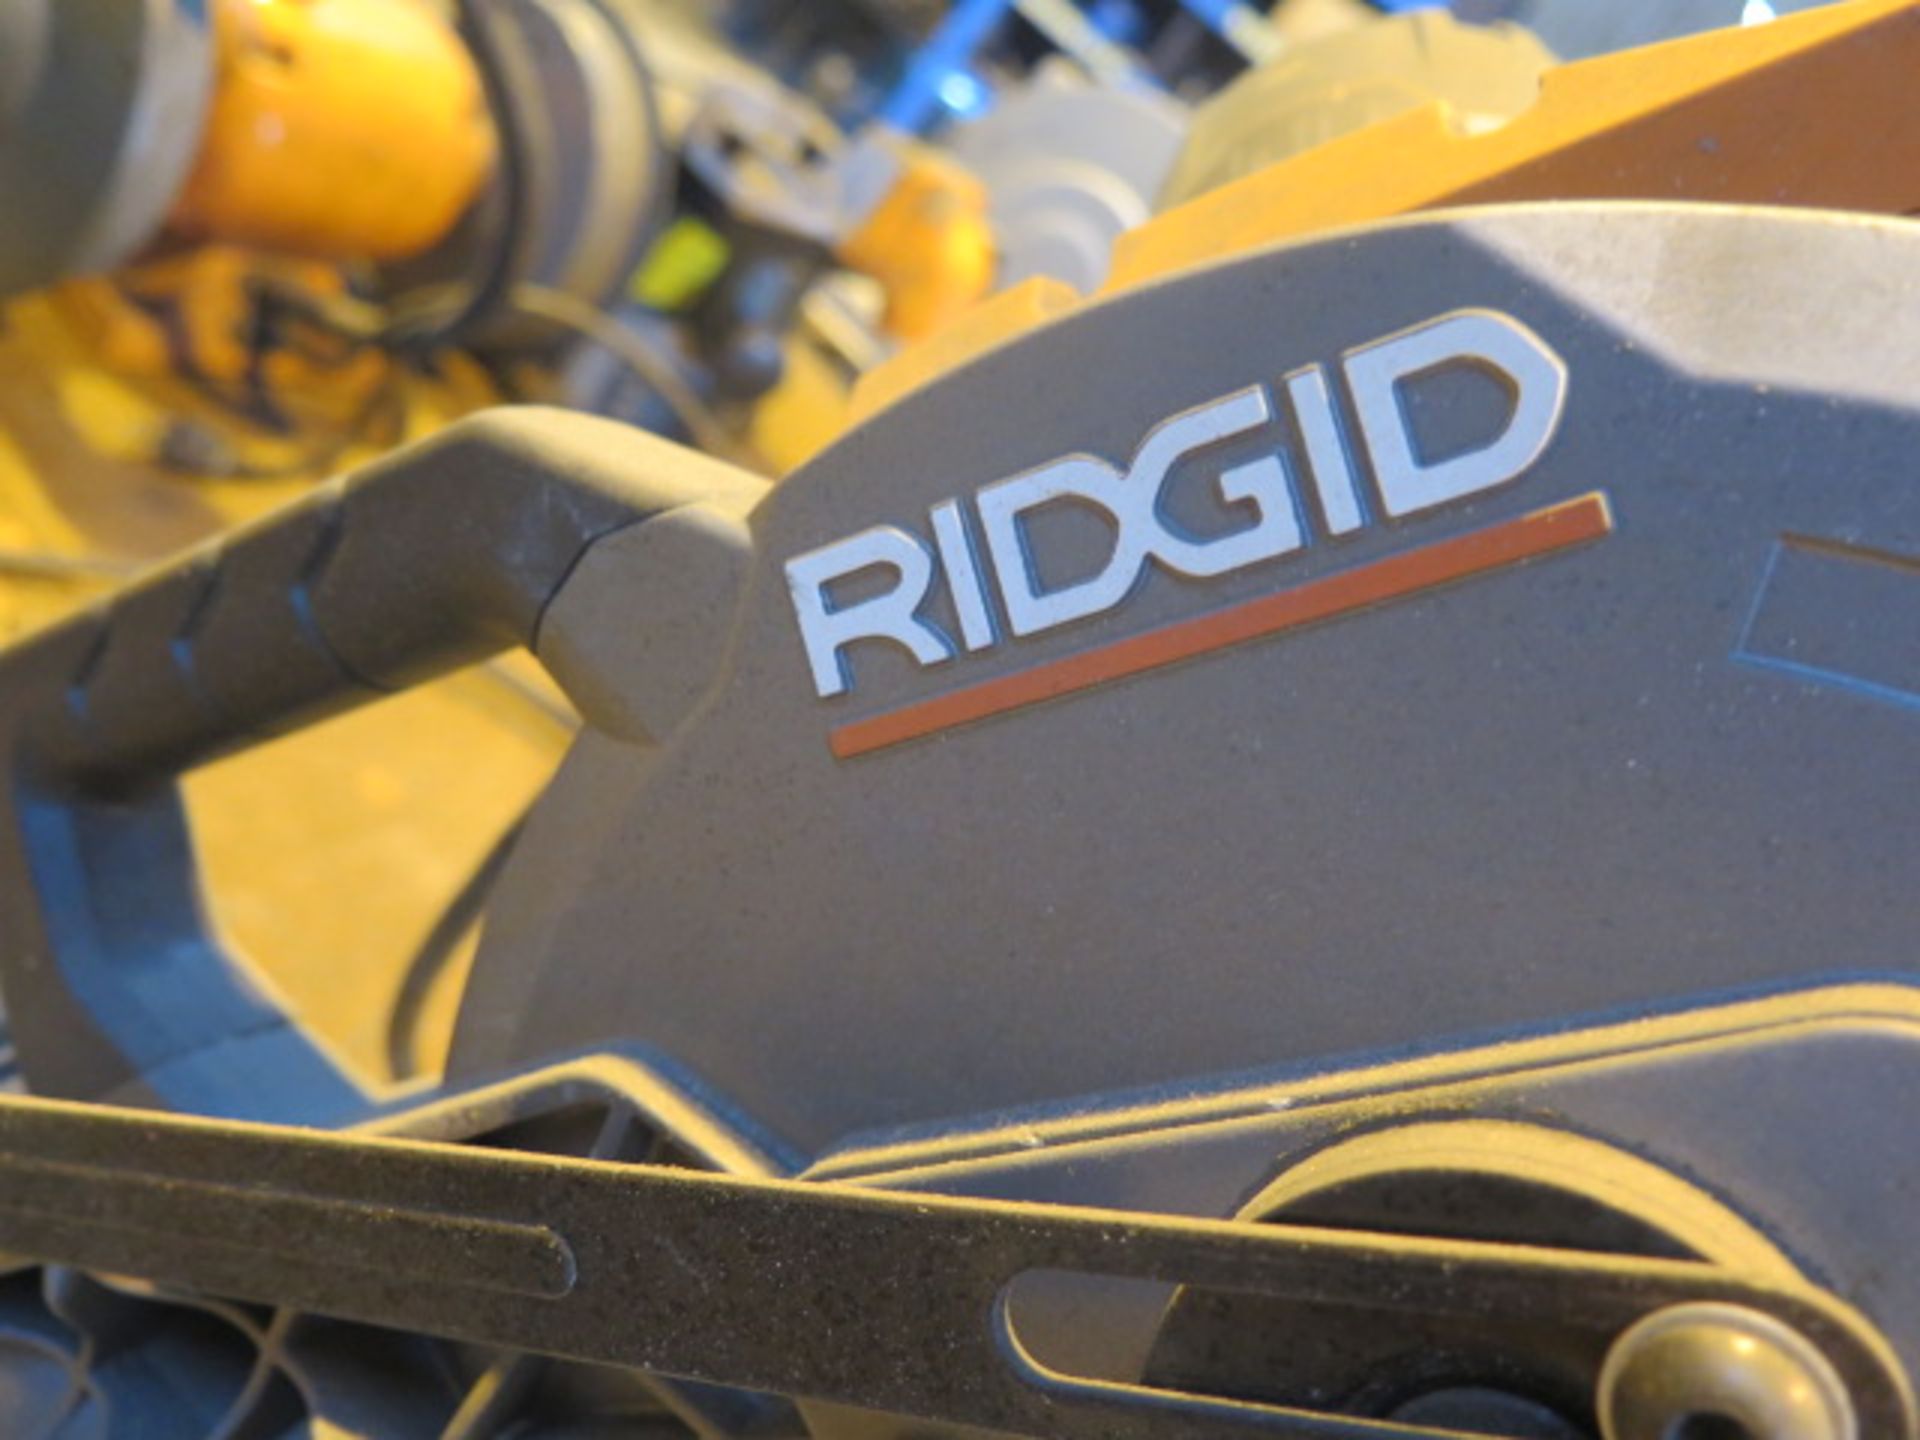 Rigid 14" Abrasive Cutoff Saw - Image 3 of 3